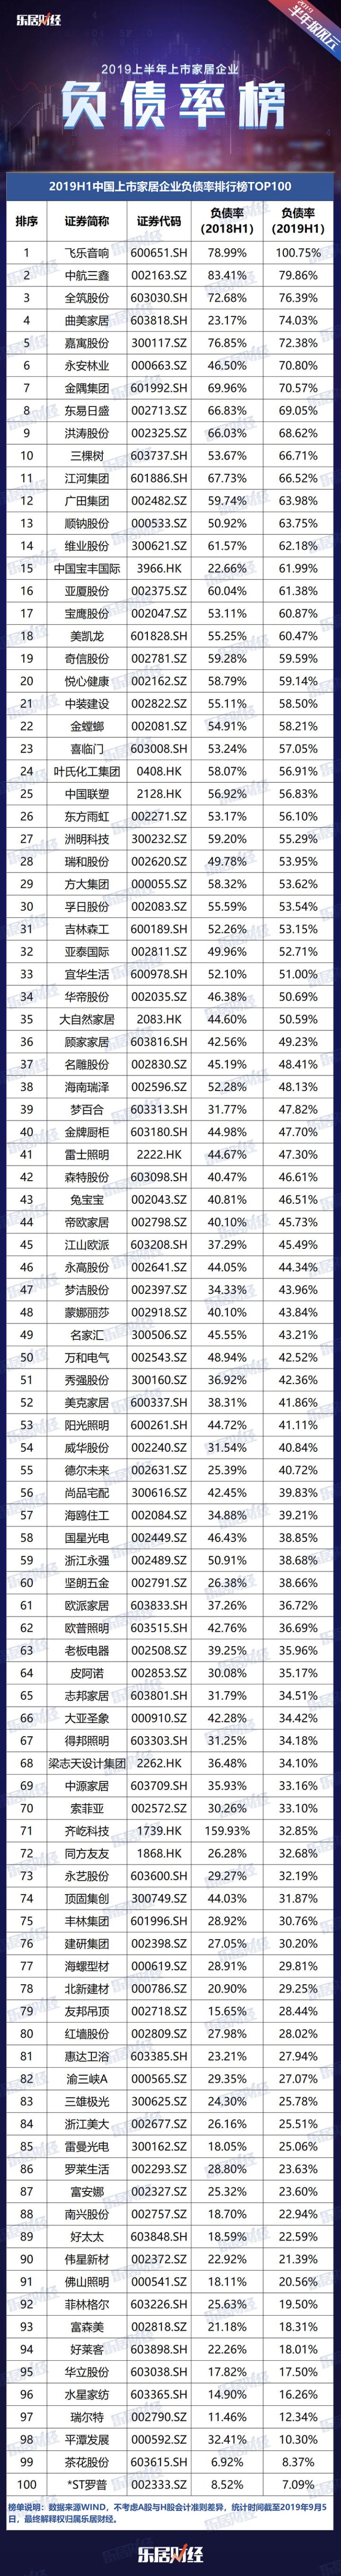 2019H1上市家企负债率TOP100